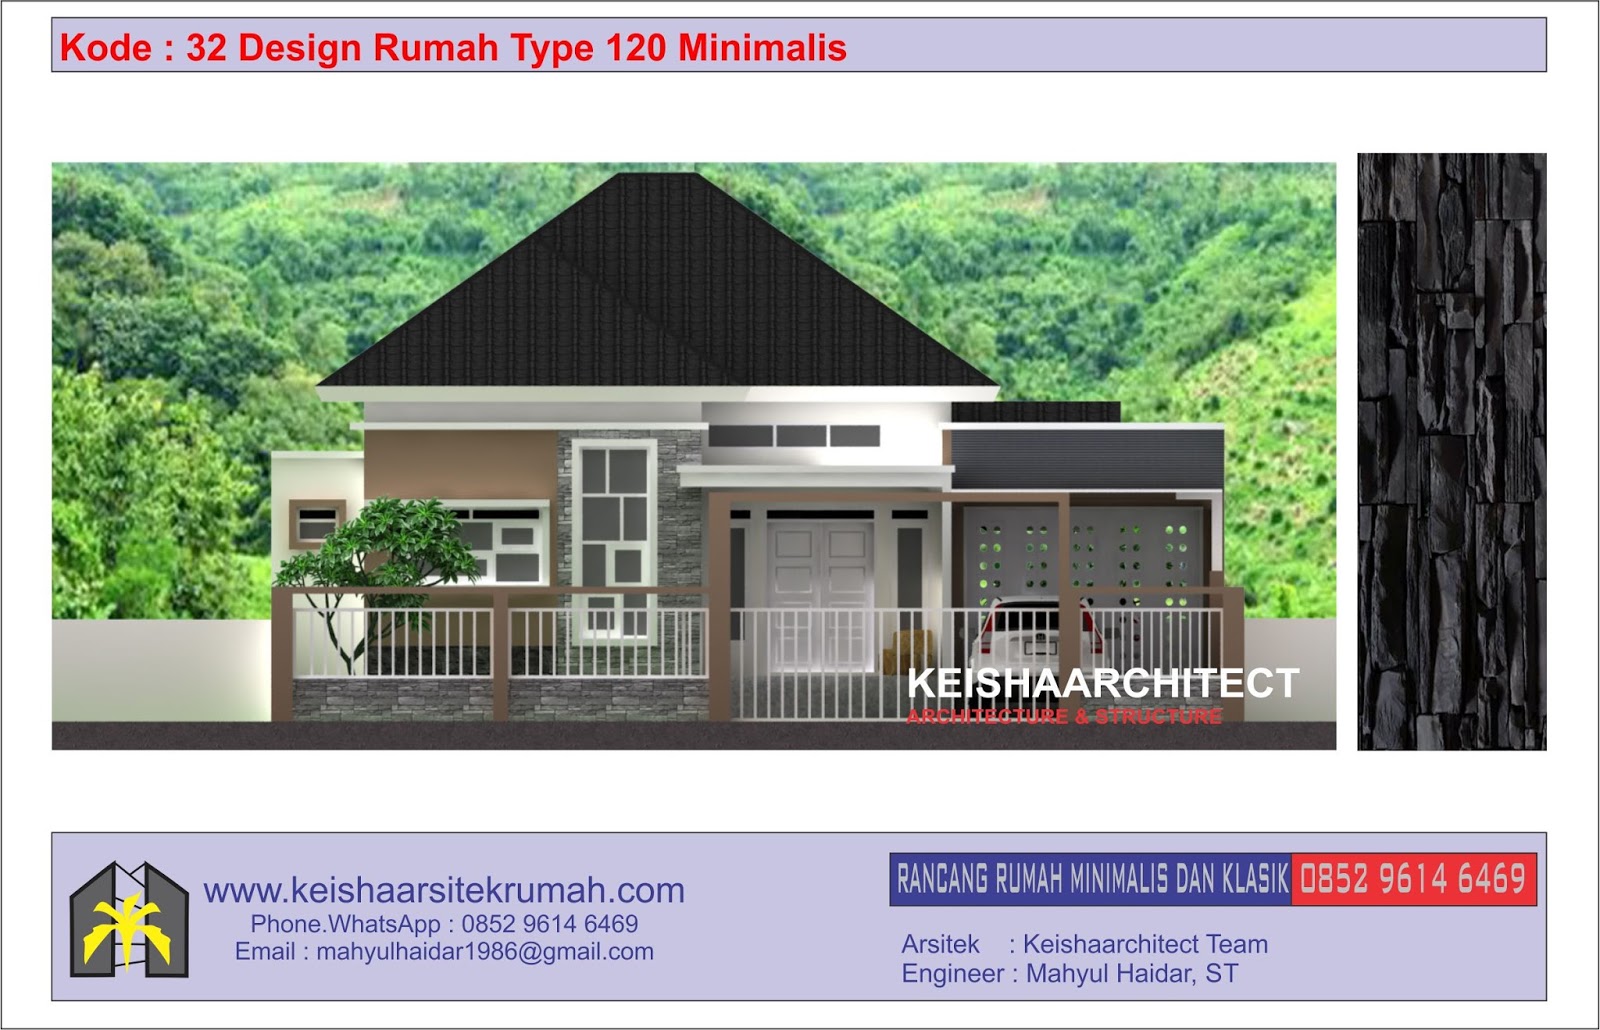 Kode 32 Design Rumah Type 120 Lokasi Lampaseh Banda Aceh